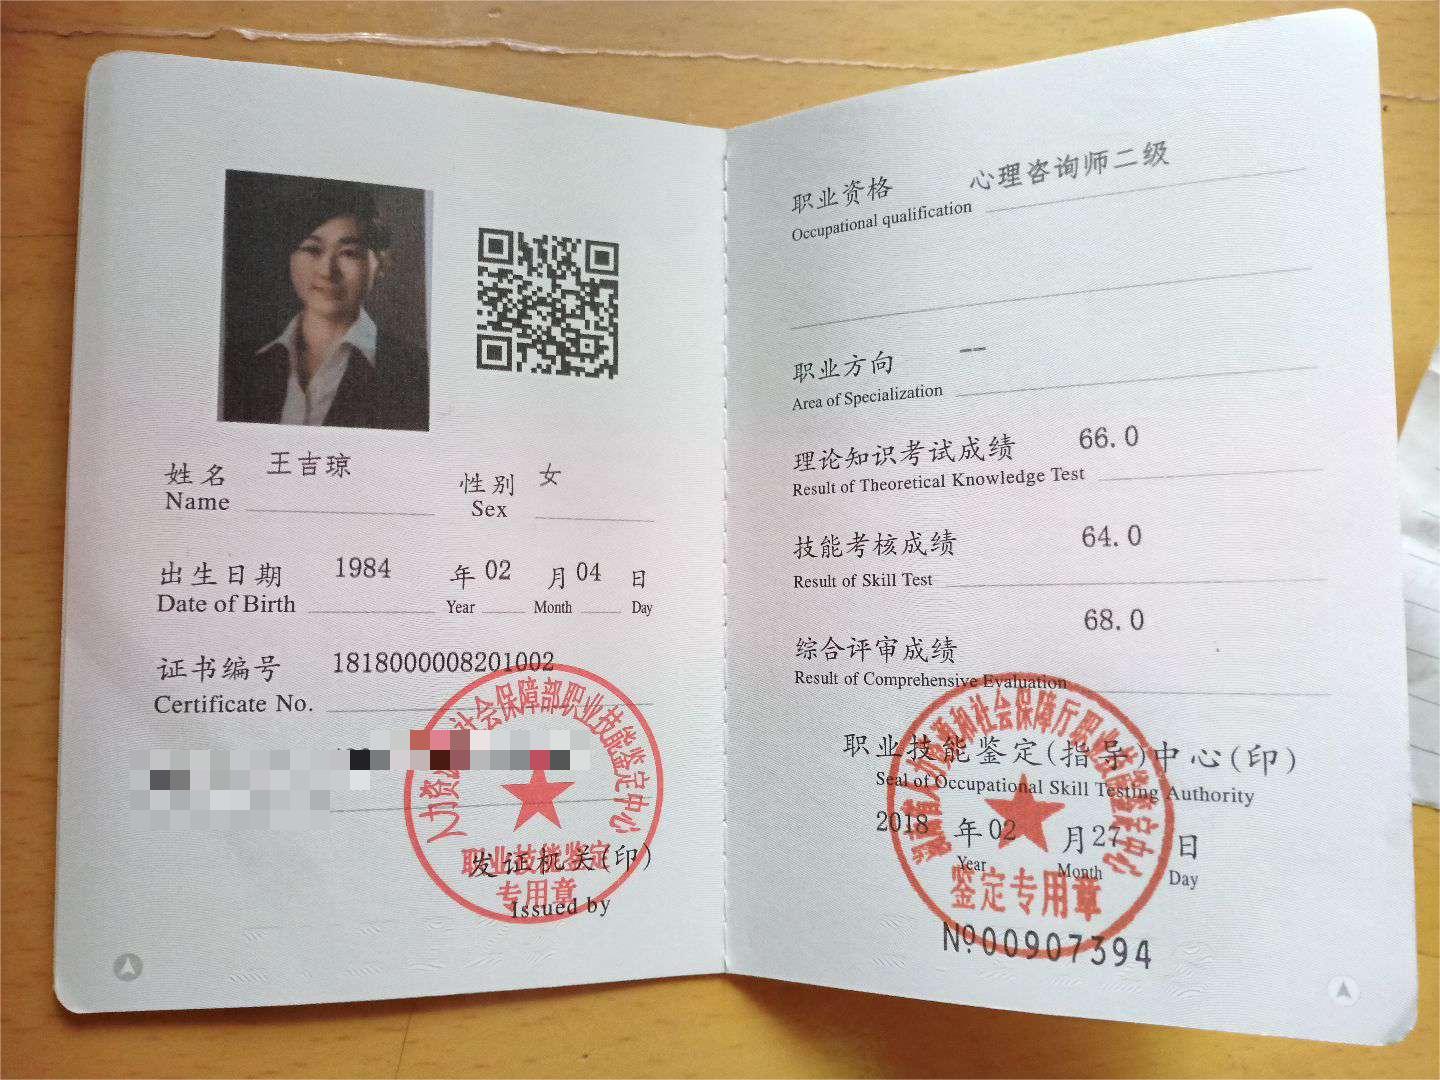 咨询师王吉琼的职业证书